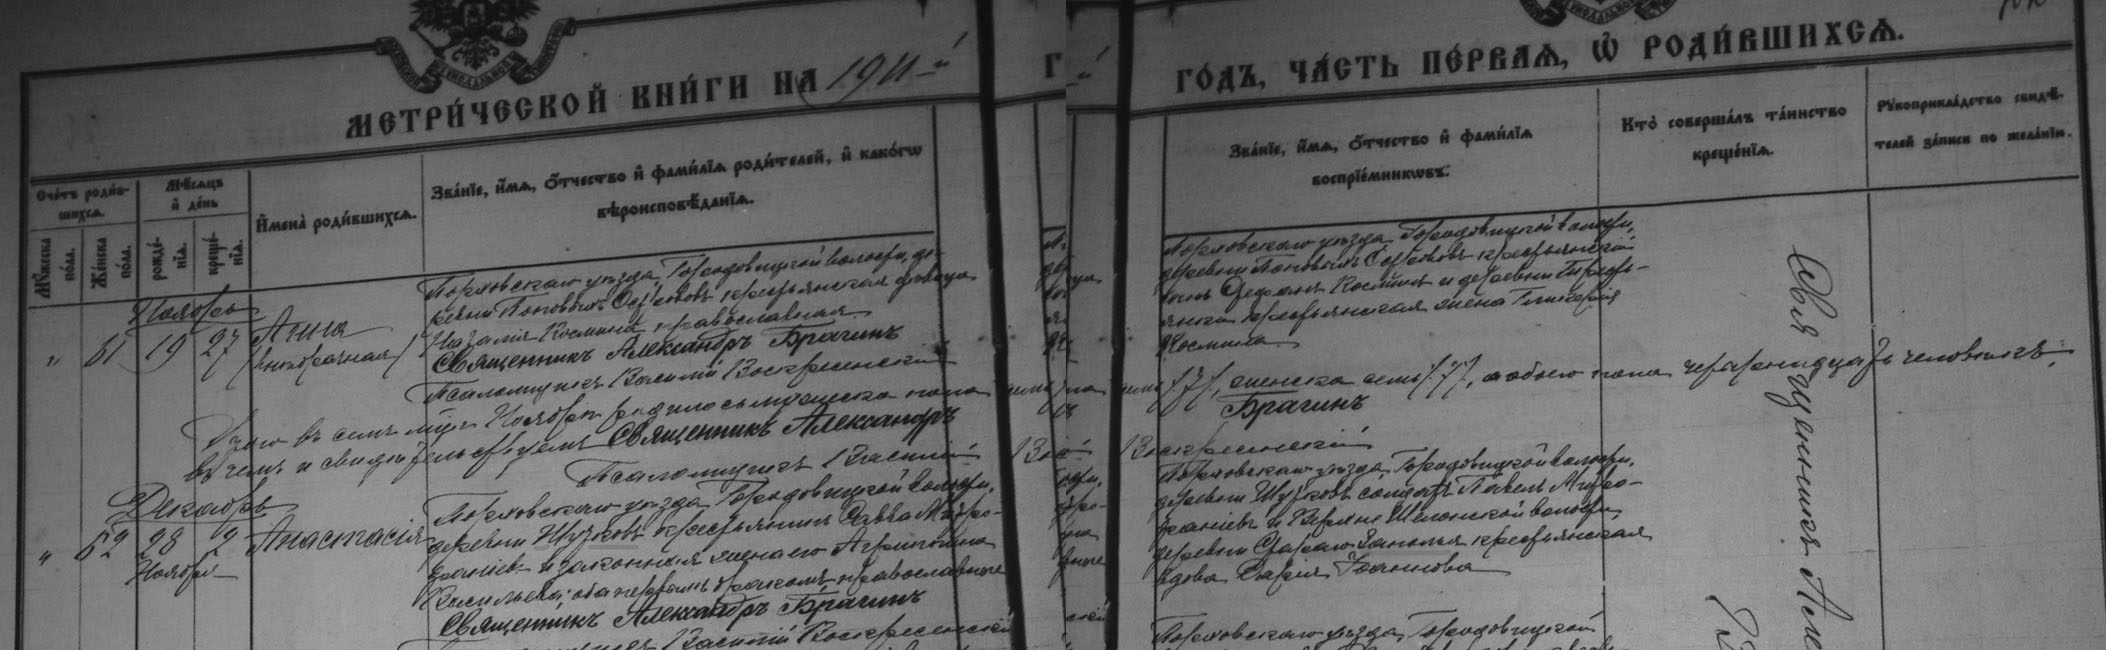 Фрагмент метрической книги по Порховскому уезду.